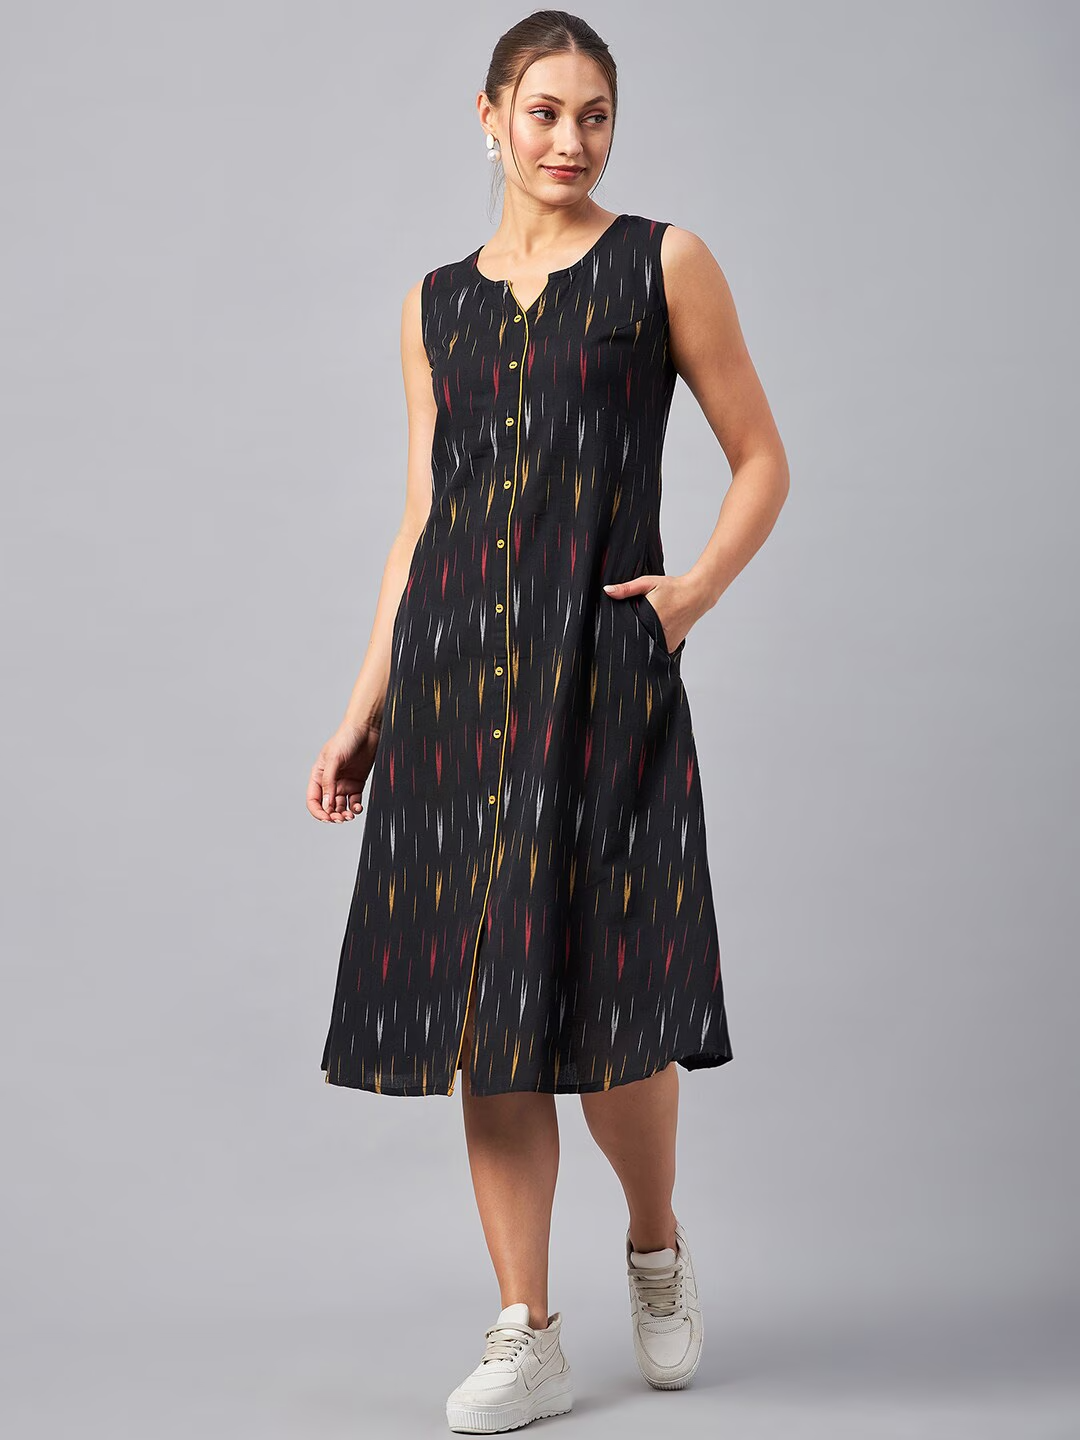 Self Design Sleeveless Cotton A-line Dress